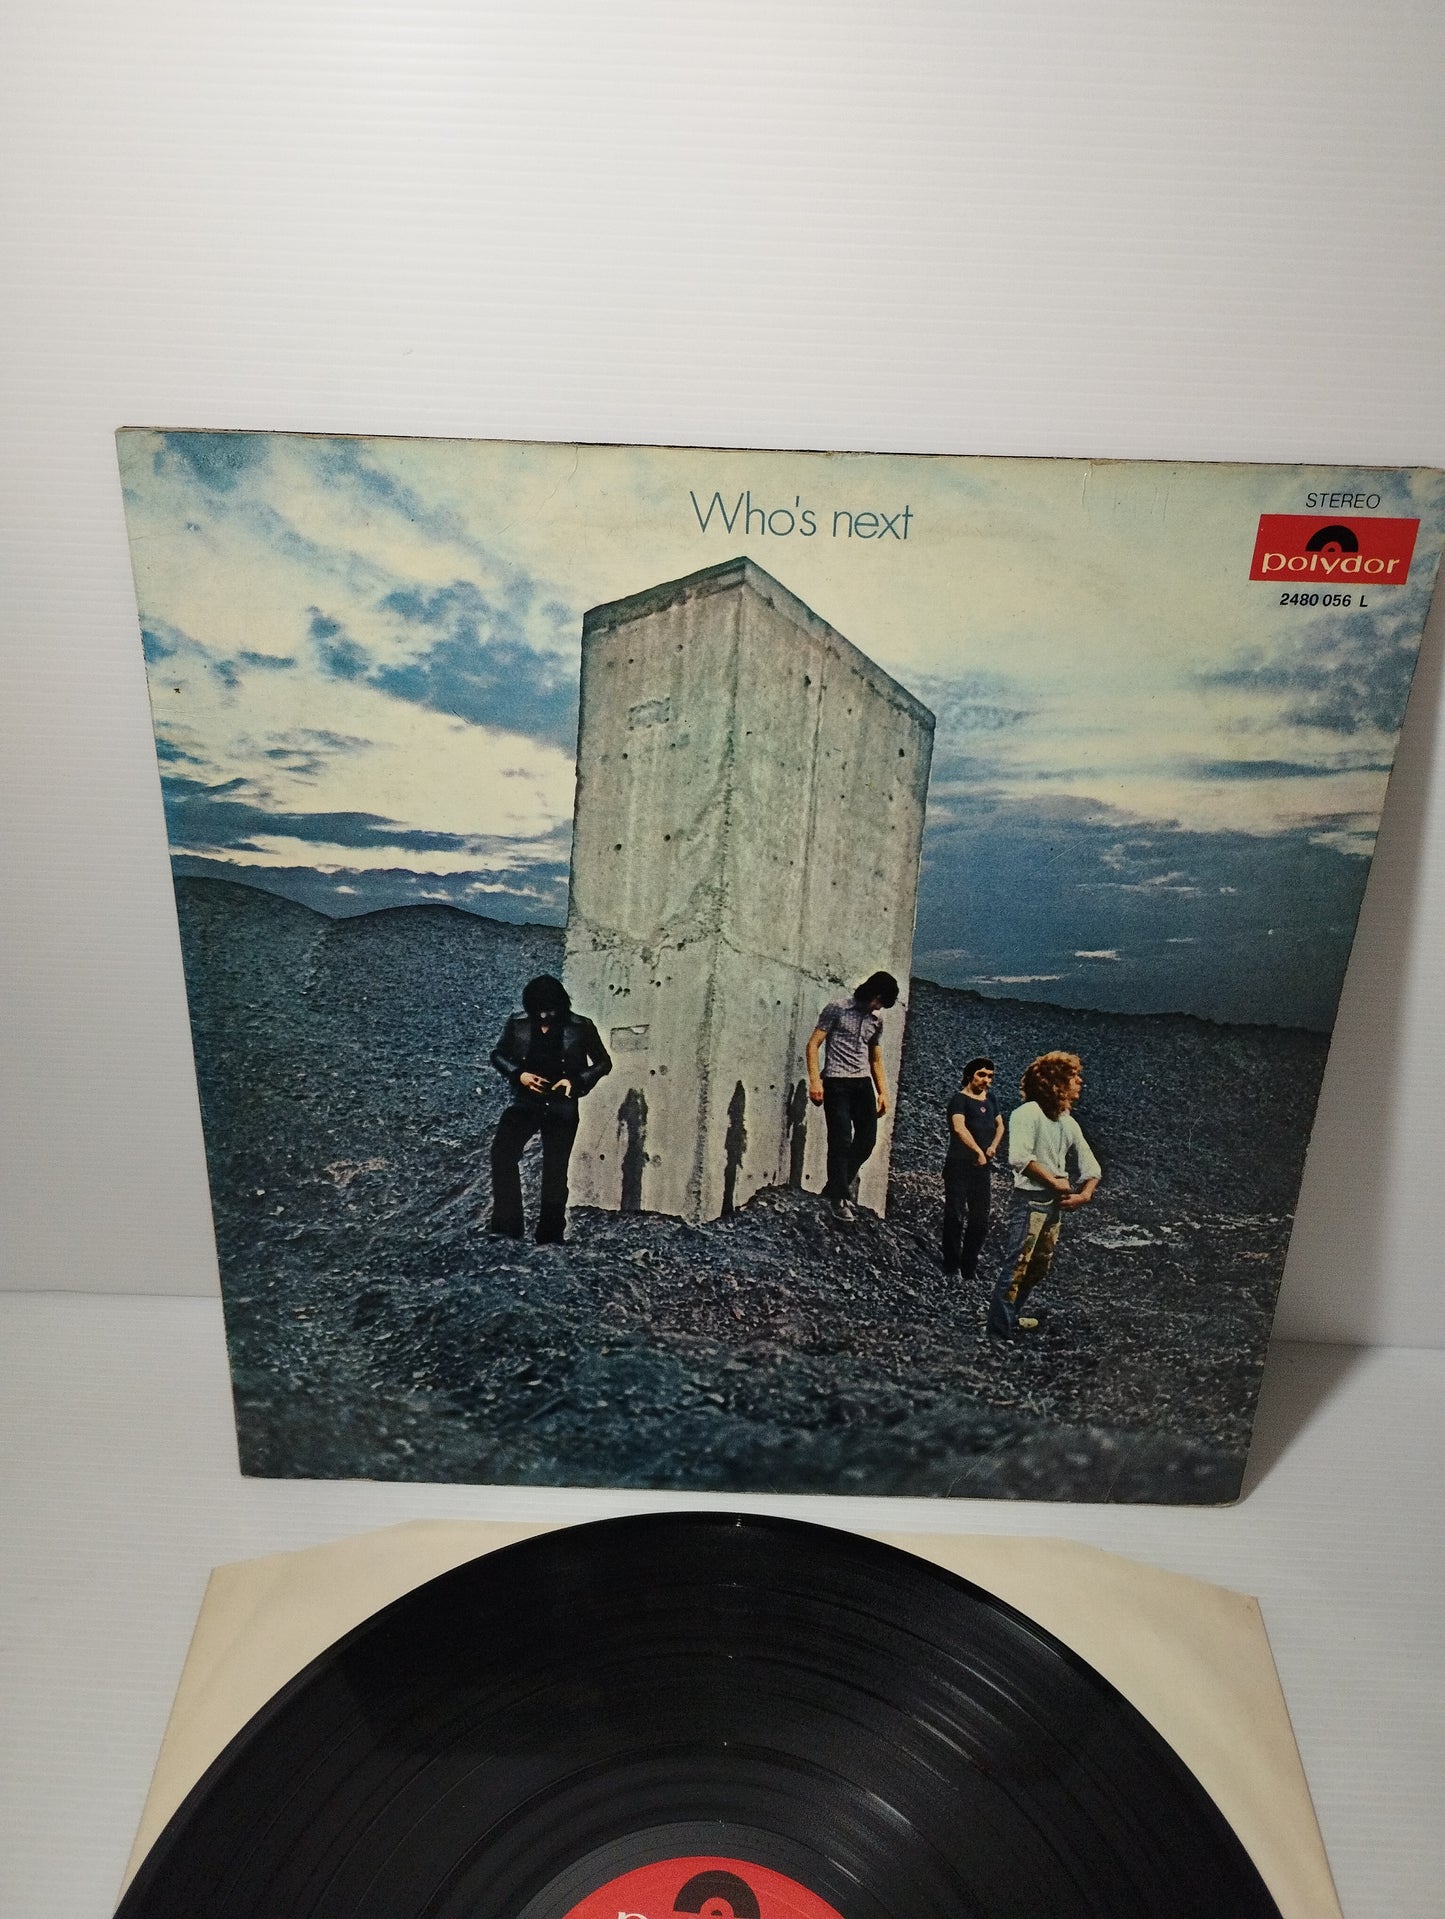 The Who's Next the Who LP 33 giri
Edito nel 1971 da Polydor cod.2480 056L